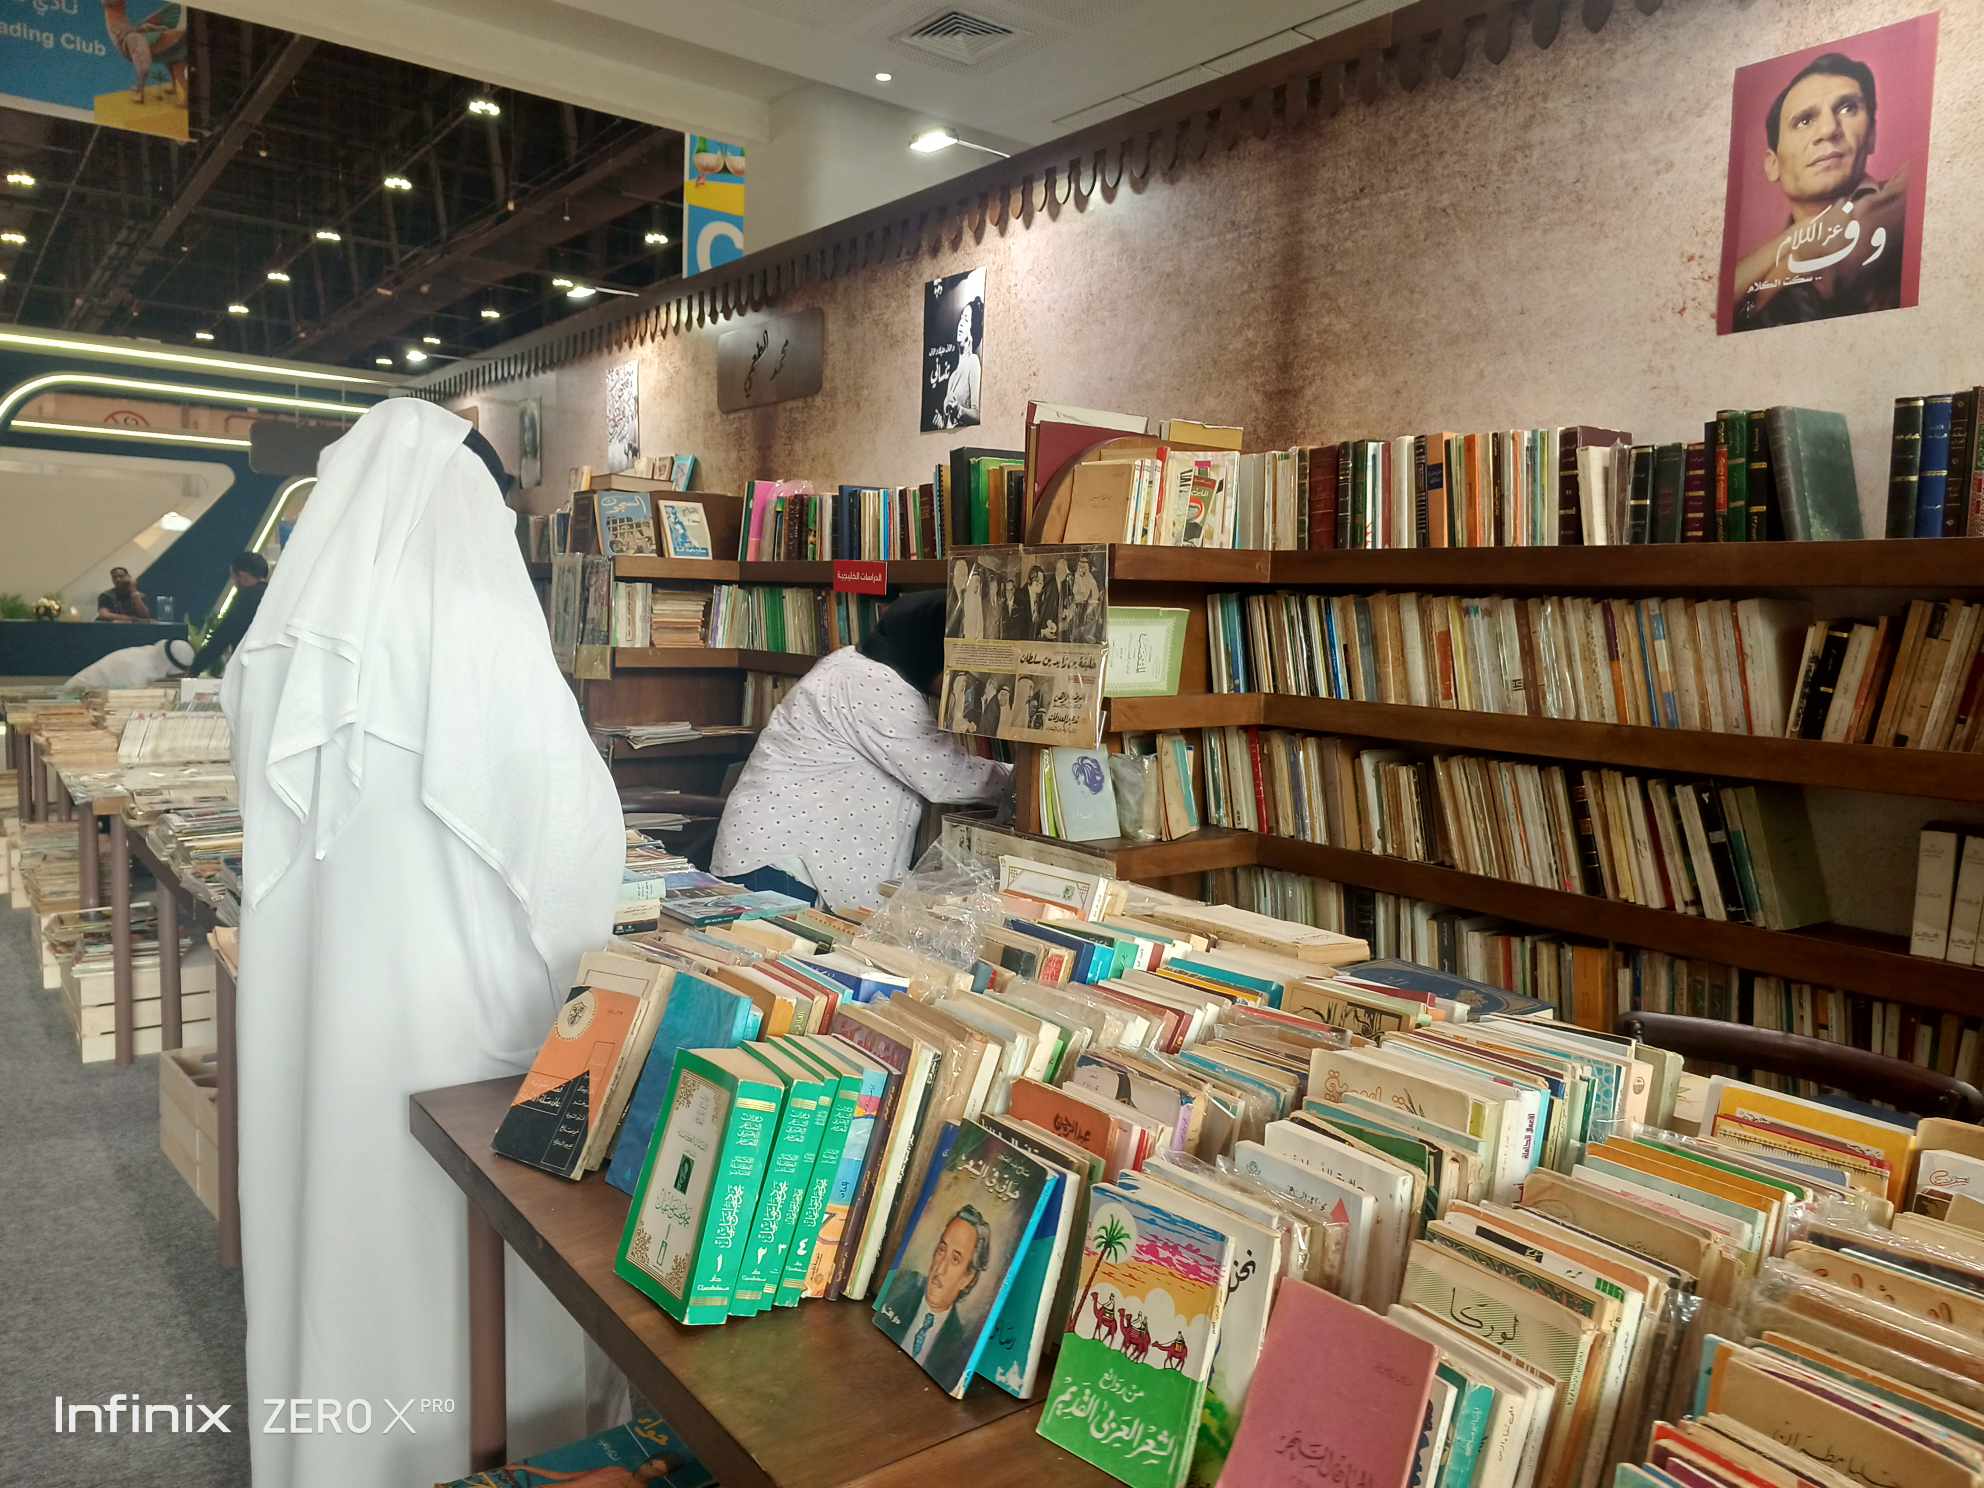  سور الأزبكية في معرض أبو ظبي للكتاب.. أوراق برائحة الماضي